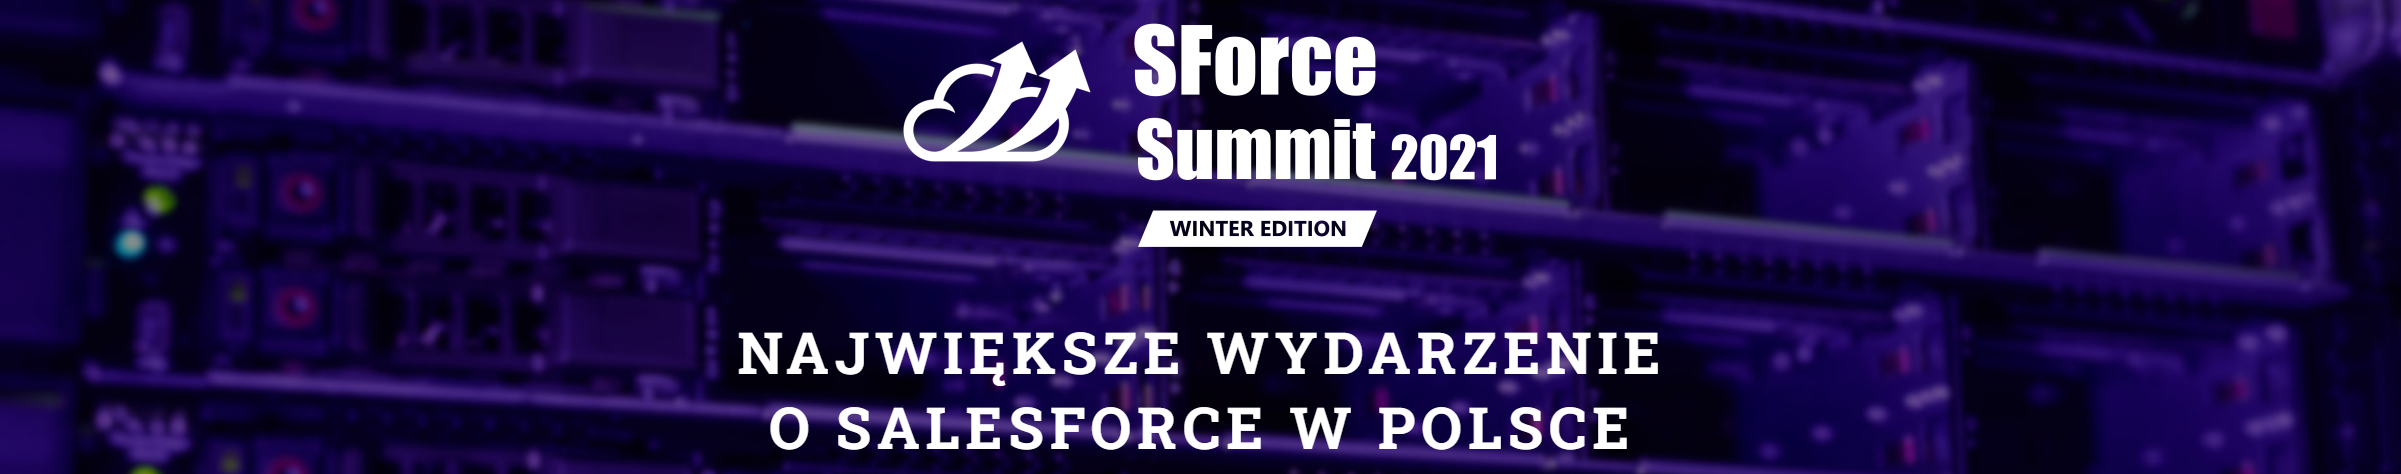 Zaproszenie na SForce Summit 2021 (online) Winter Edition 